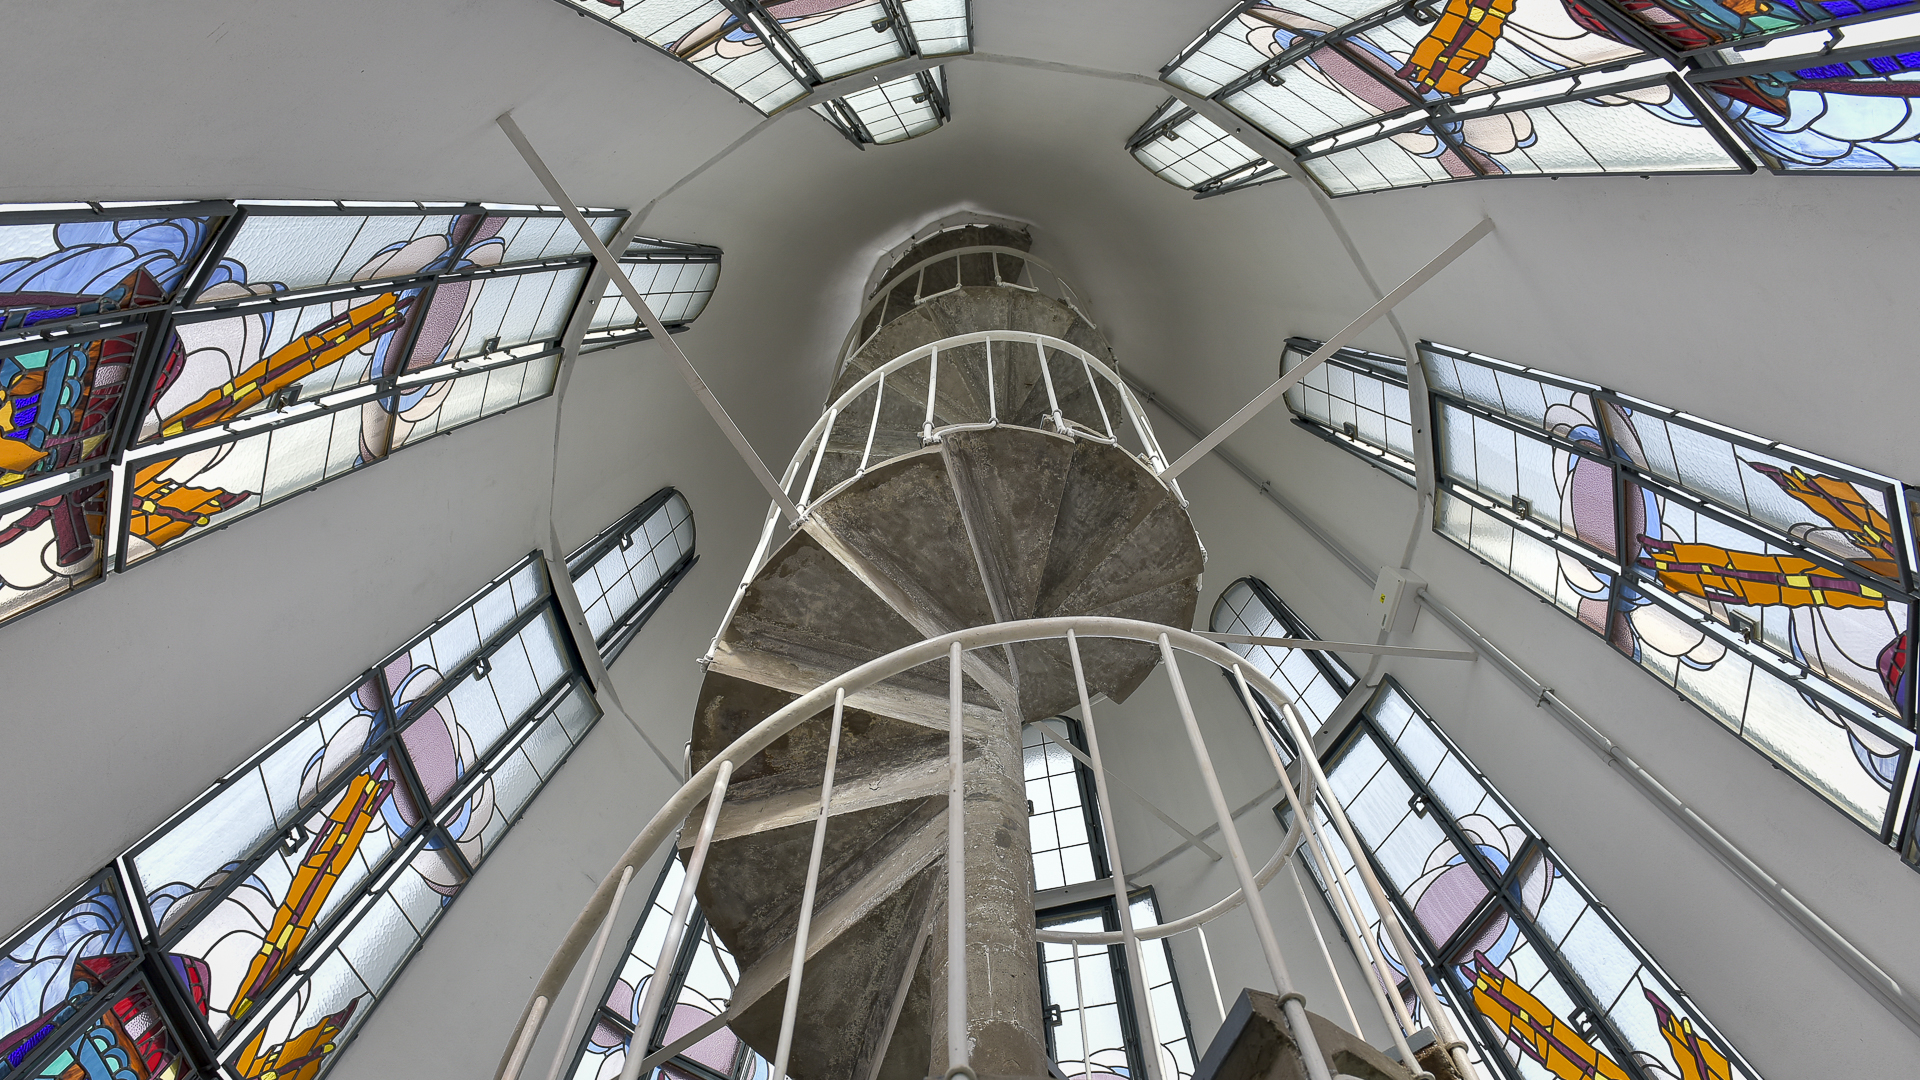 La formidable cúpula y los vitrales, a nuevo (Gustavo Gavotti)